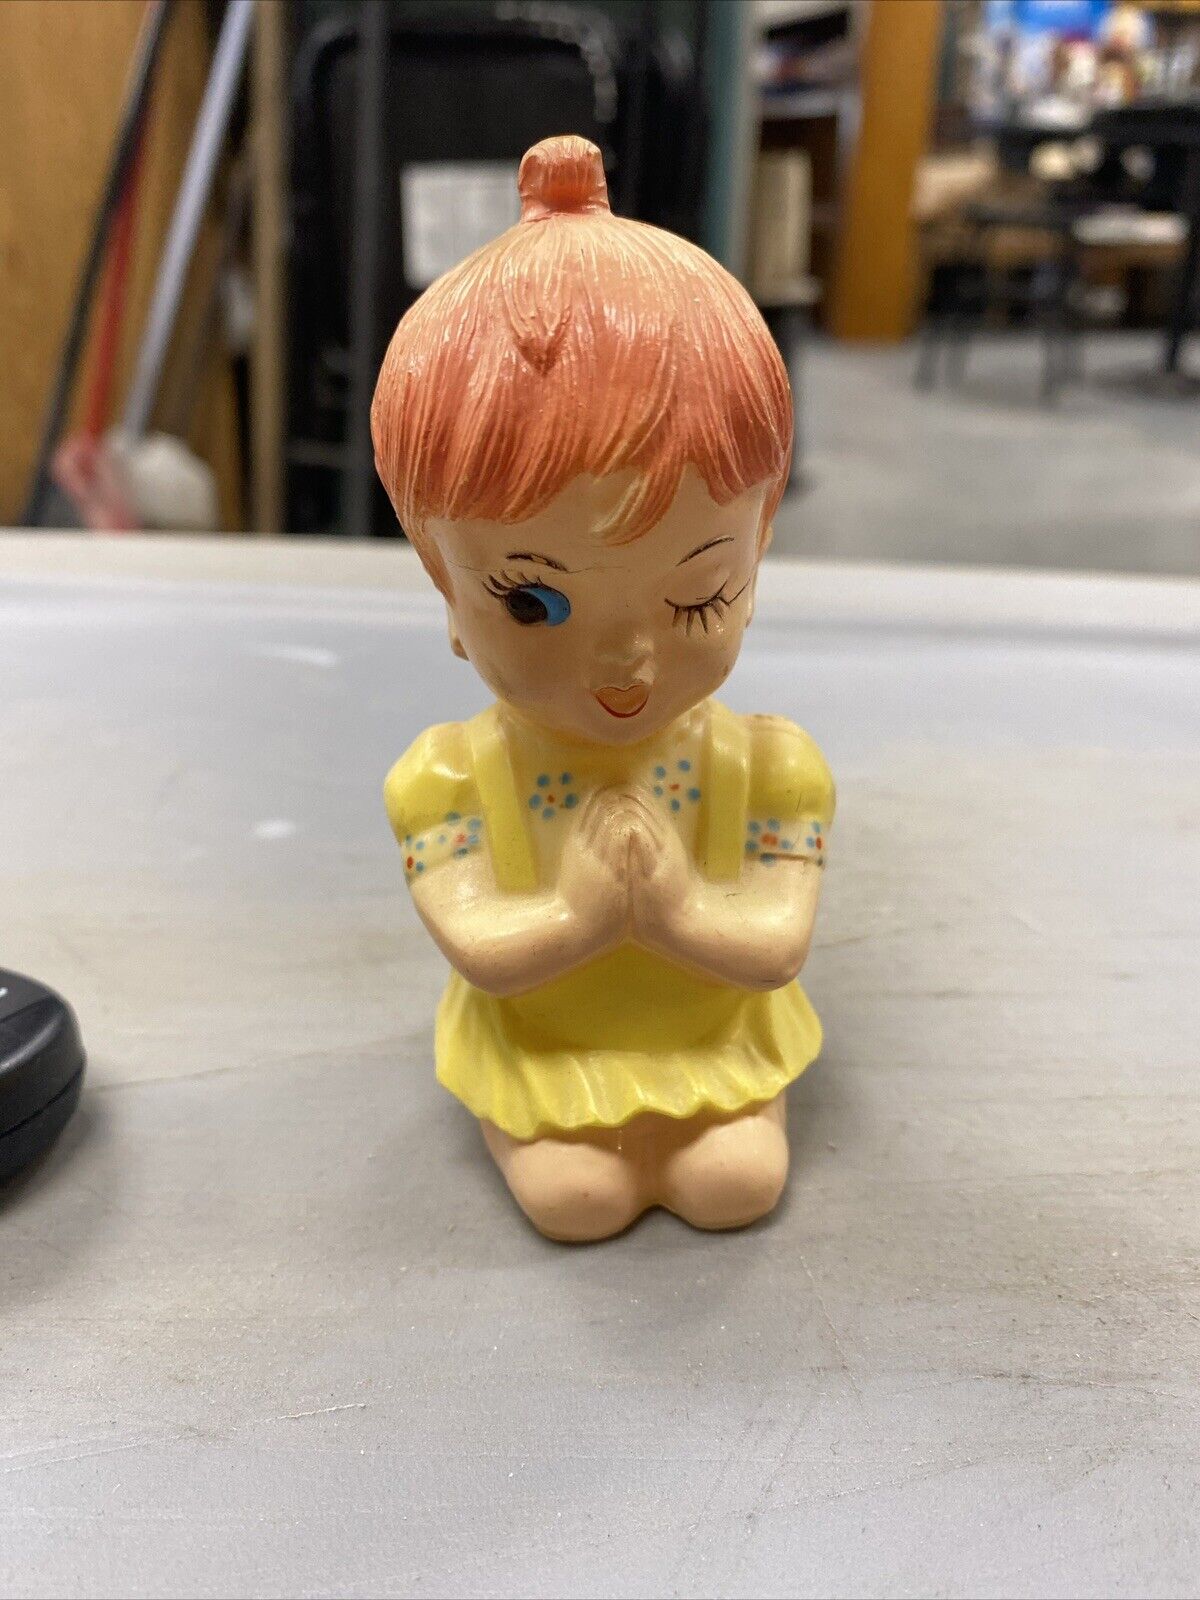 Vintage Praying Girl Yellow Dress Winking Miniature Figurine Kneeling